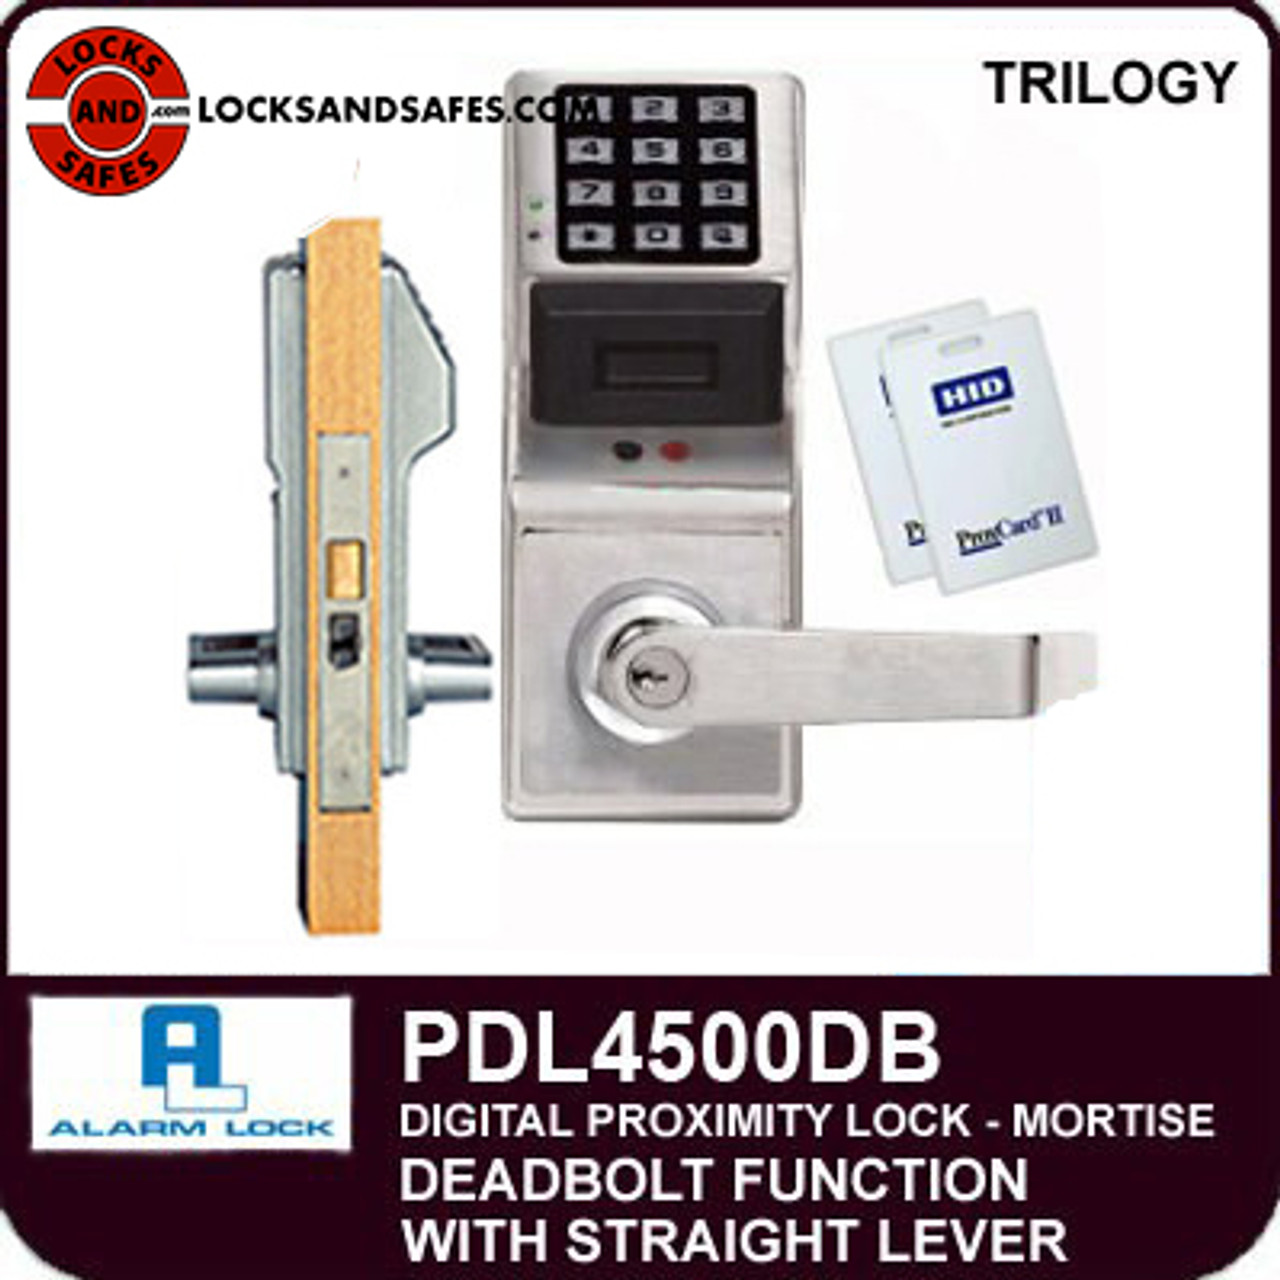 Alarm Lock Trilogy PDL4500DB ELECTRONIC MORTISE LOCKS